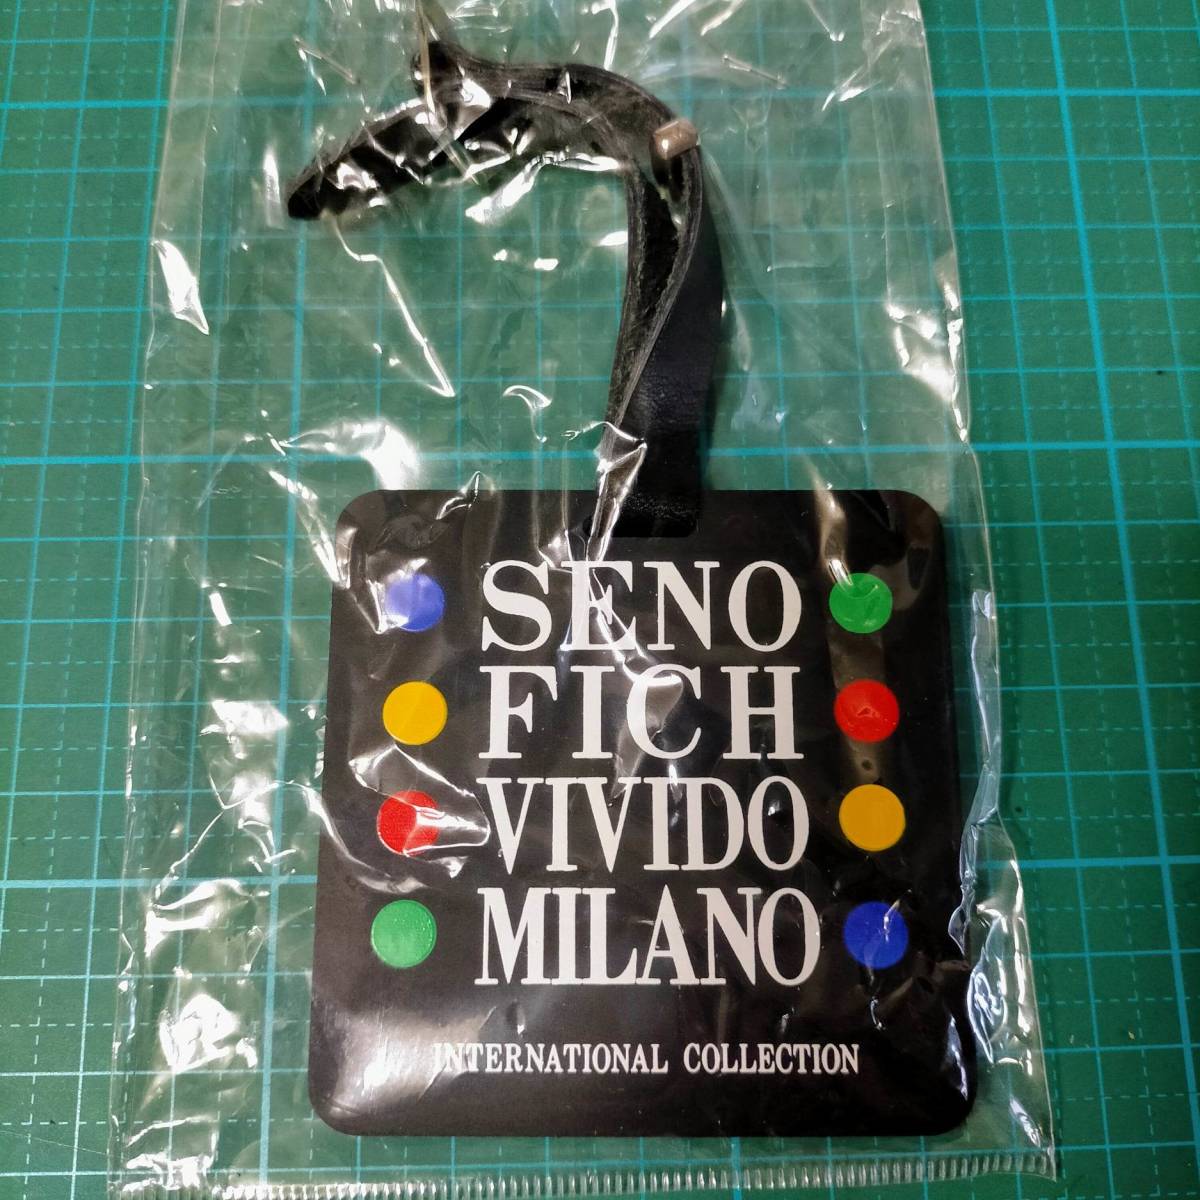 セノフィッチ タグ バッグ チャーム ネームタグ キーホルダー SENO FICH VIVIDO MILANO luggage name tag bag charm key ring holder